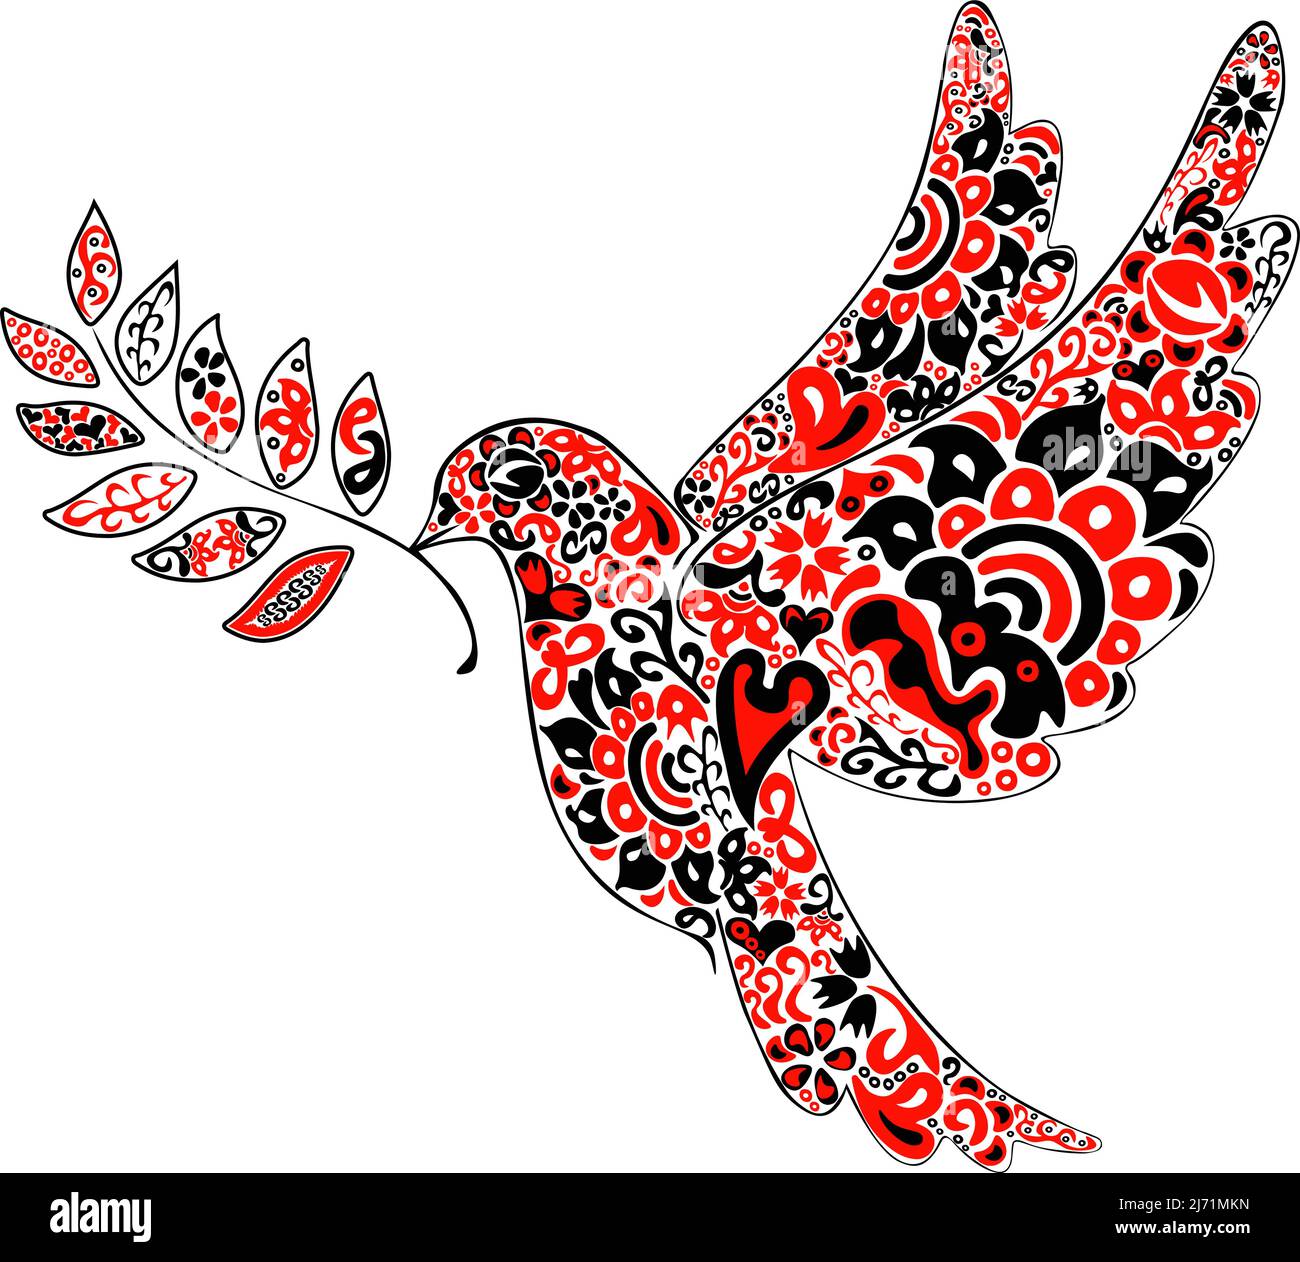 Illustrazione di arte popolare colomba di segno di pace in rosso e nero colori e modello etnico Illustrazione Vettoriale